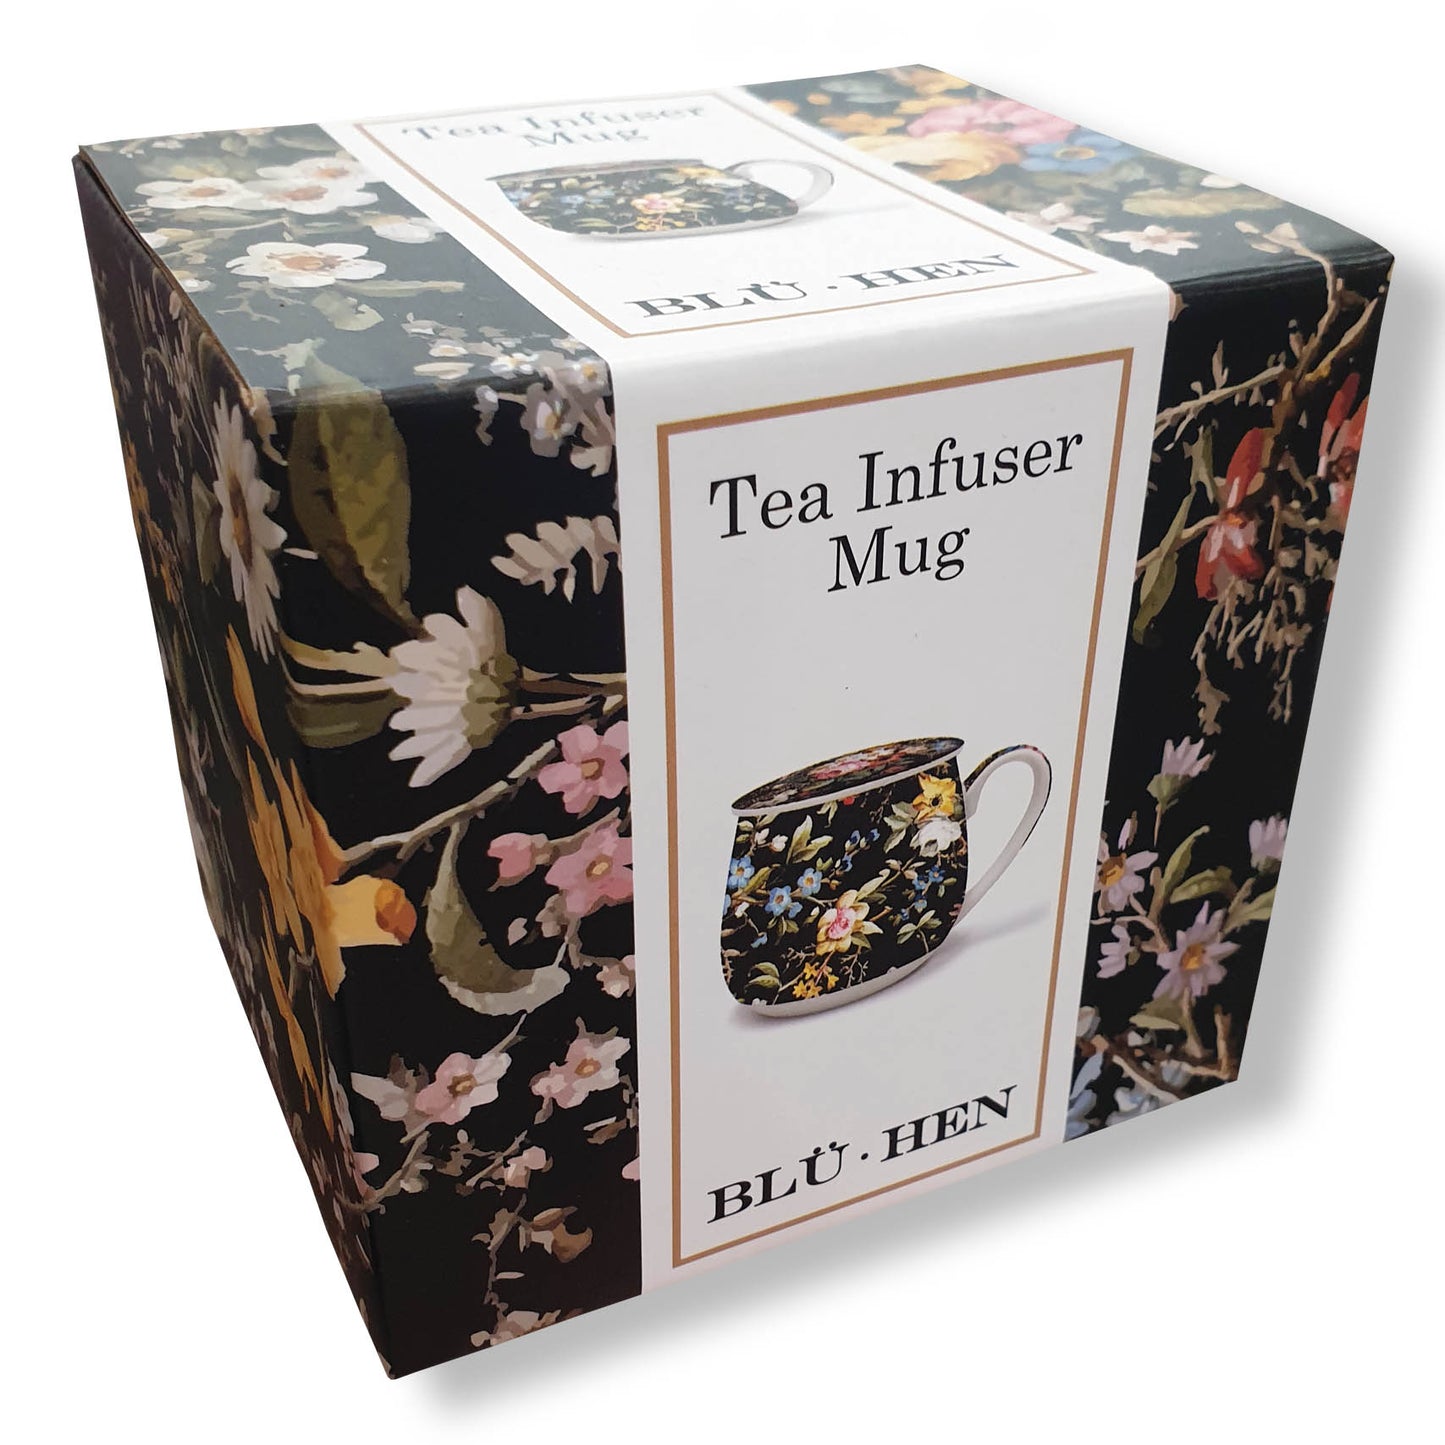 Tea Infuser Mug - Kilburn